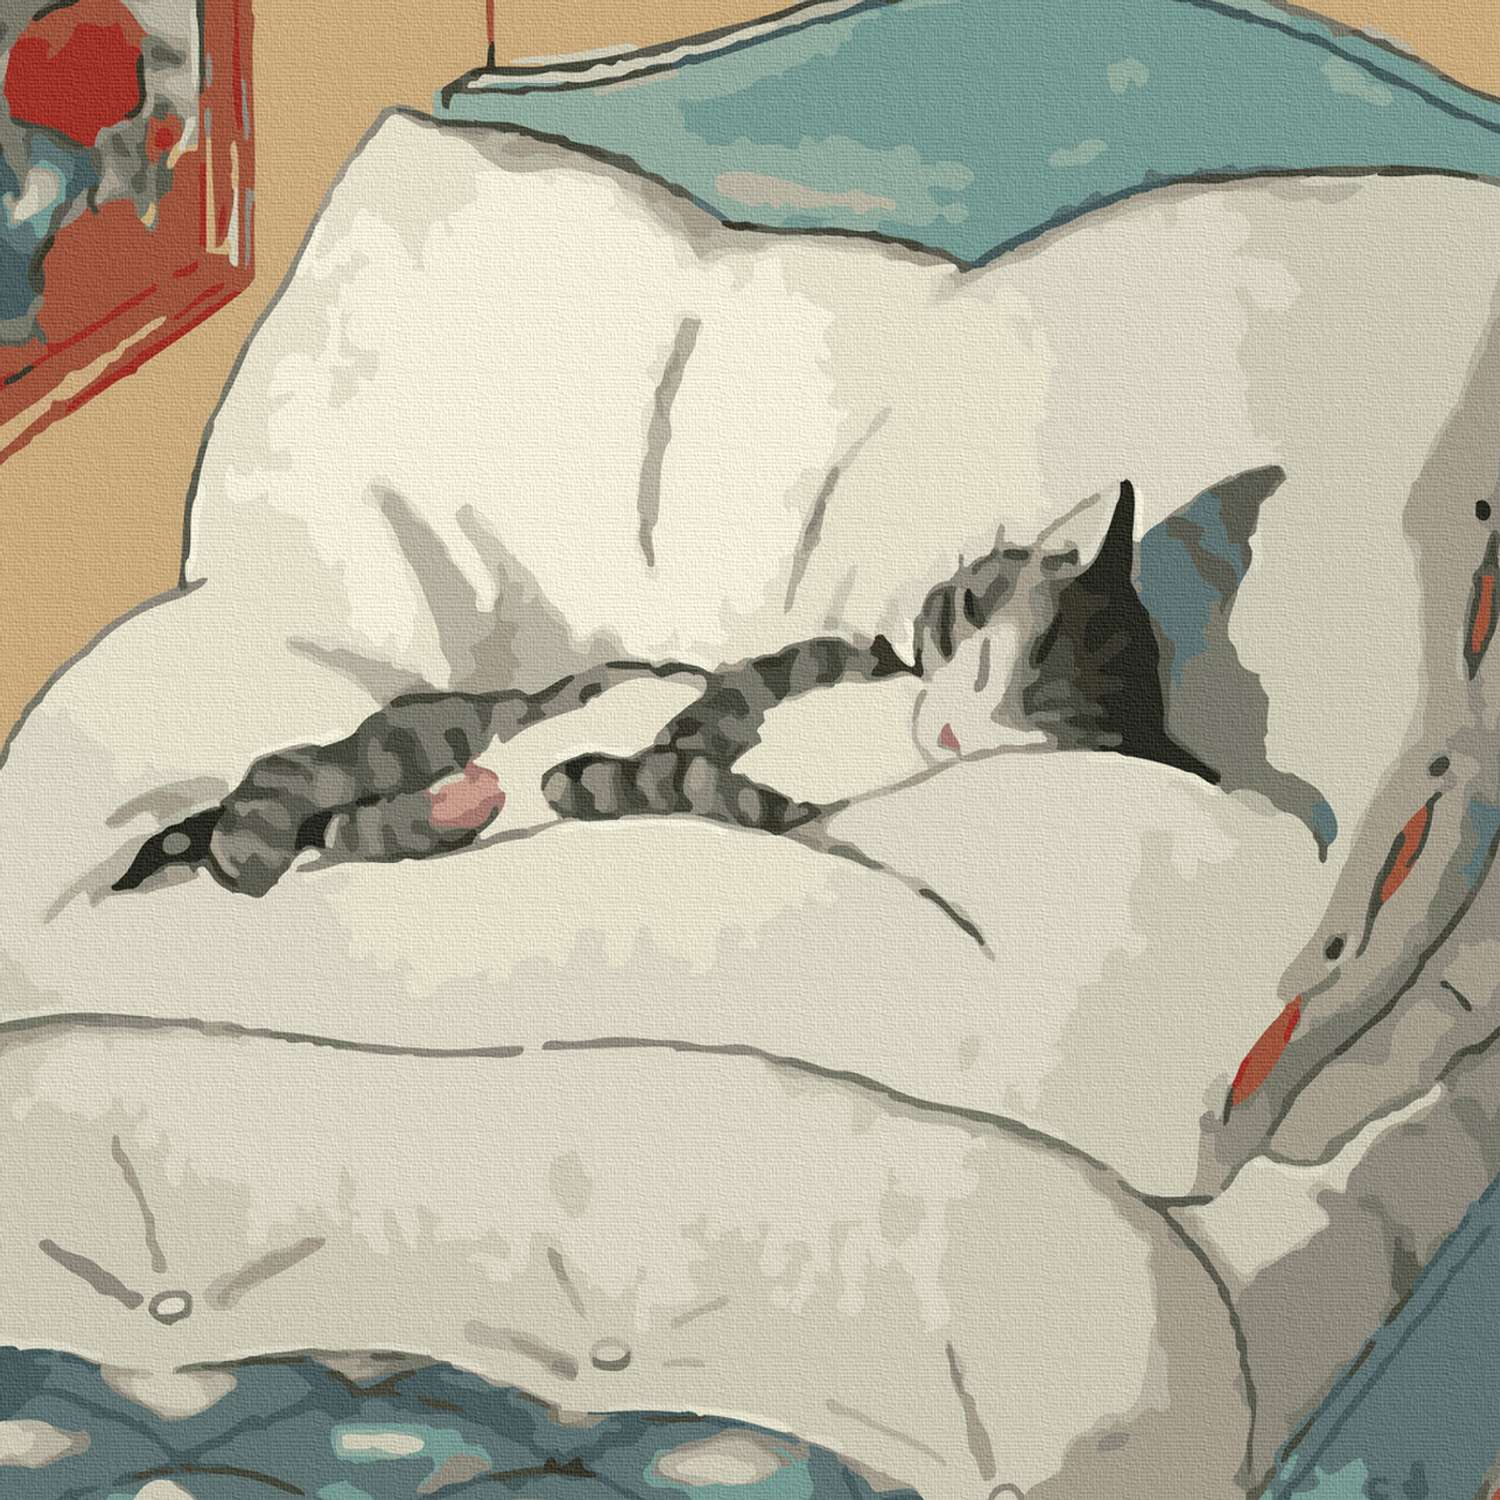 кошка ложится на кровать умершего